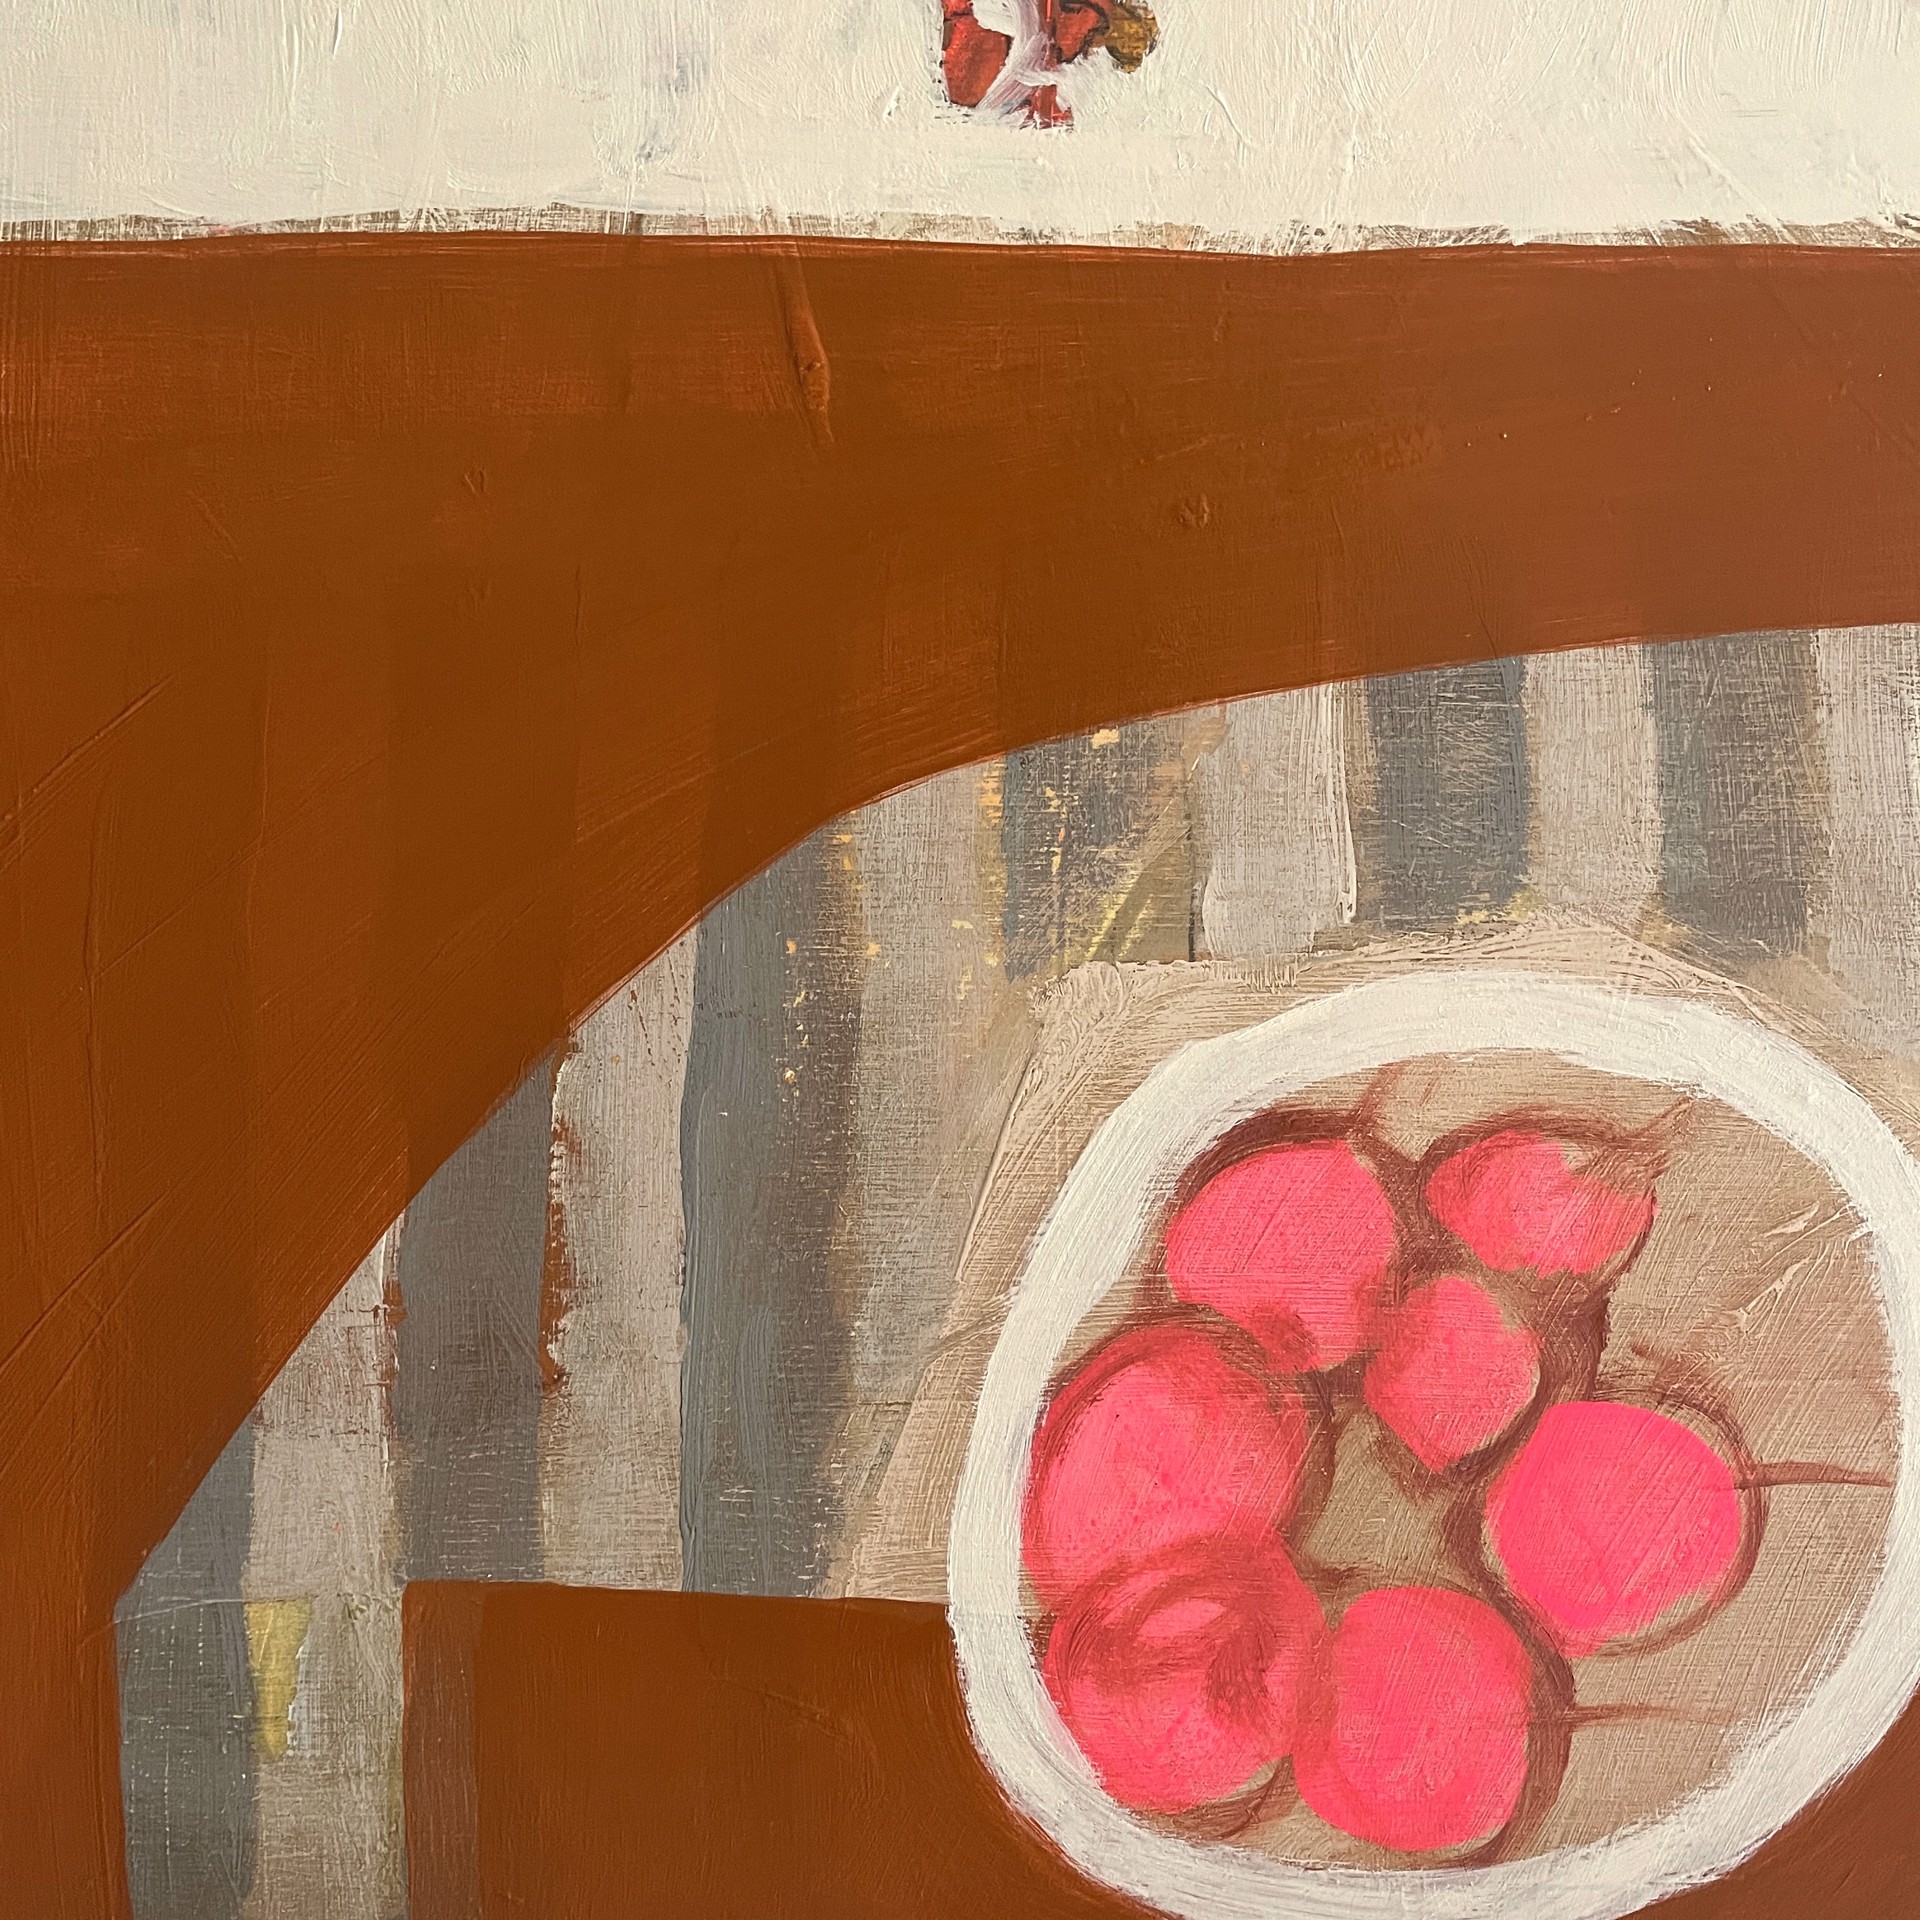 Cherries and Bittersweet on Striped Table by Rachael Van Dyke